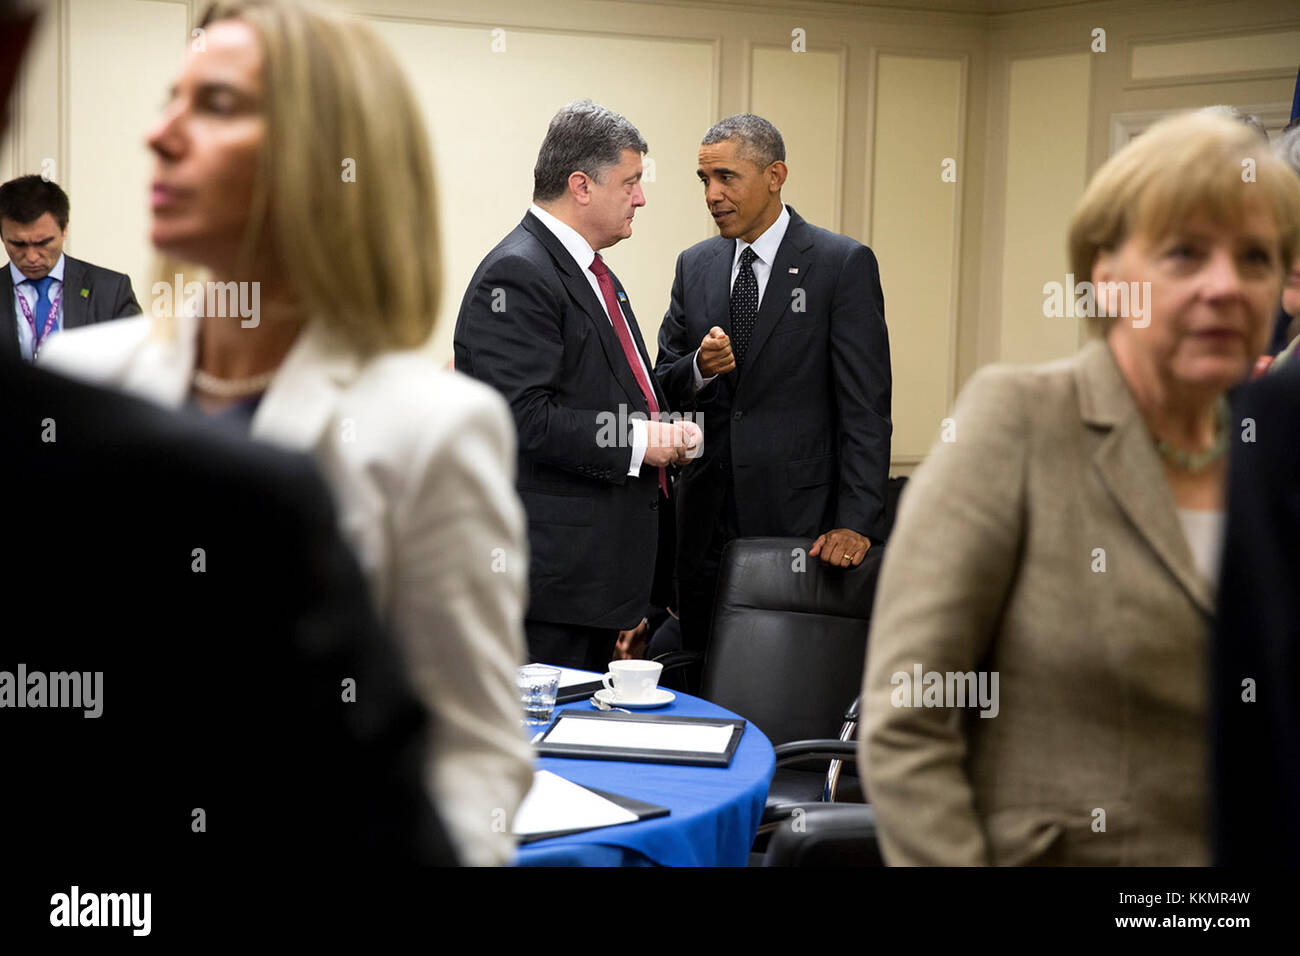 Le président barack obama parle avec le président Petro Poroshenko de l'Ukraine à la suite d'une réunion avec les dirigeants de l'Italie, la France, l'Allemagne et le Royaume-Uni à la Celtic Manor Resort à Newport au Pays de Galles, sept. 4, 2014. Banque D'Images